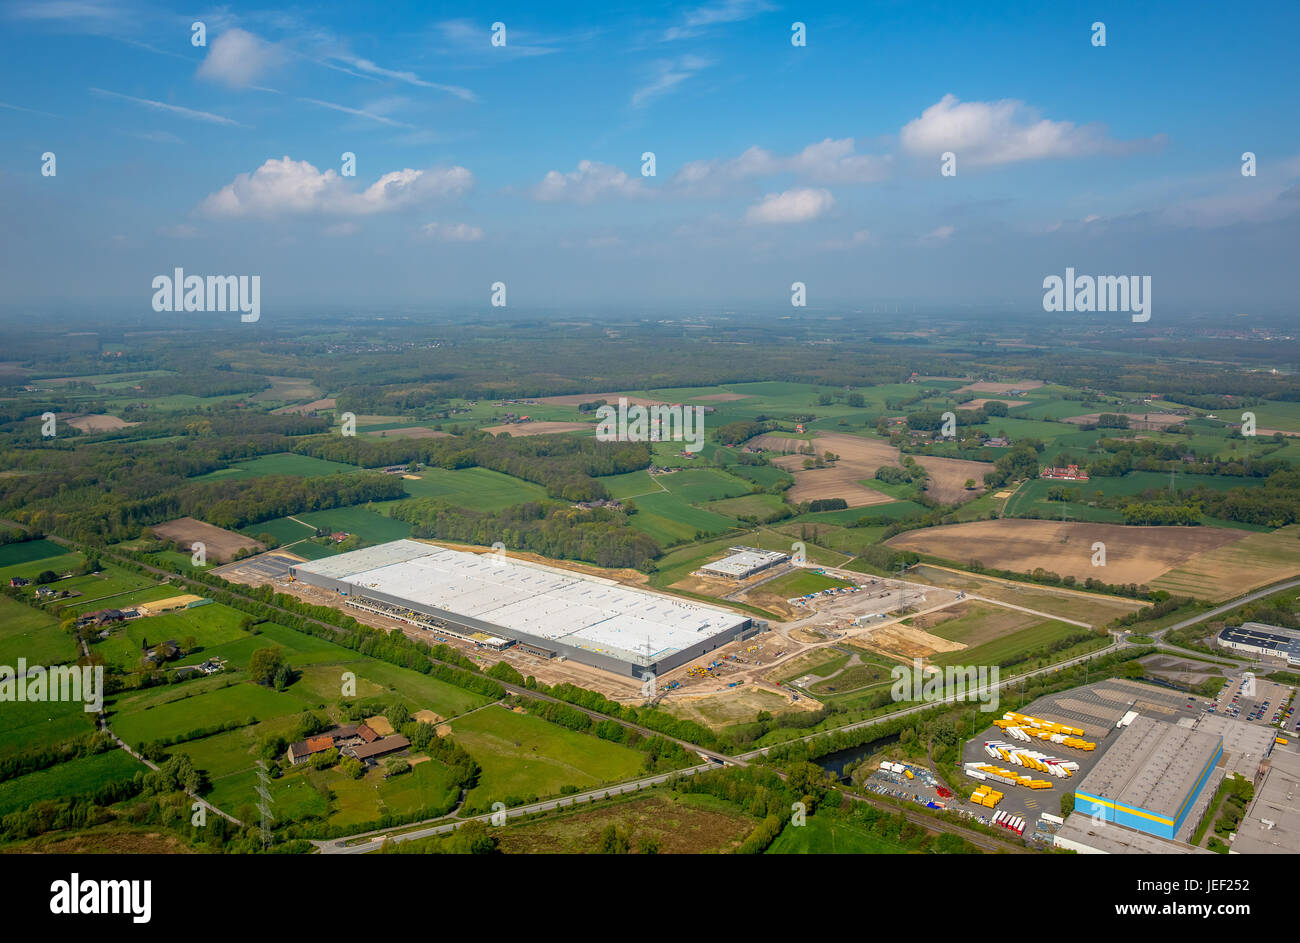 Amazon-Logistik-Center, Werne-Ruhr und Umgebung, Nordrhein-Westfalen, Deutschland Stockfoto